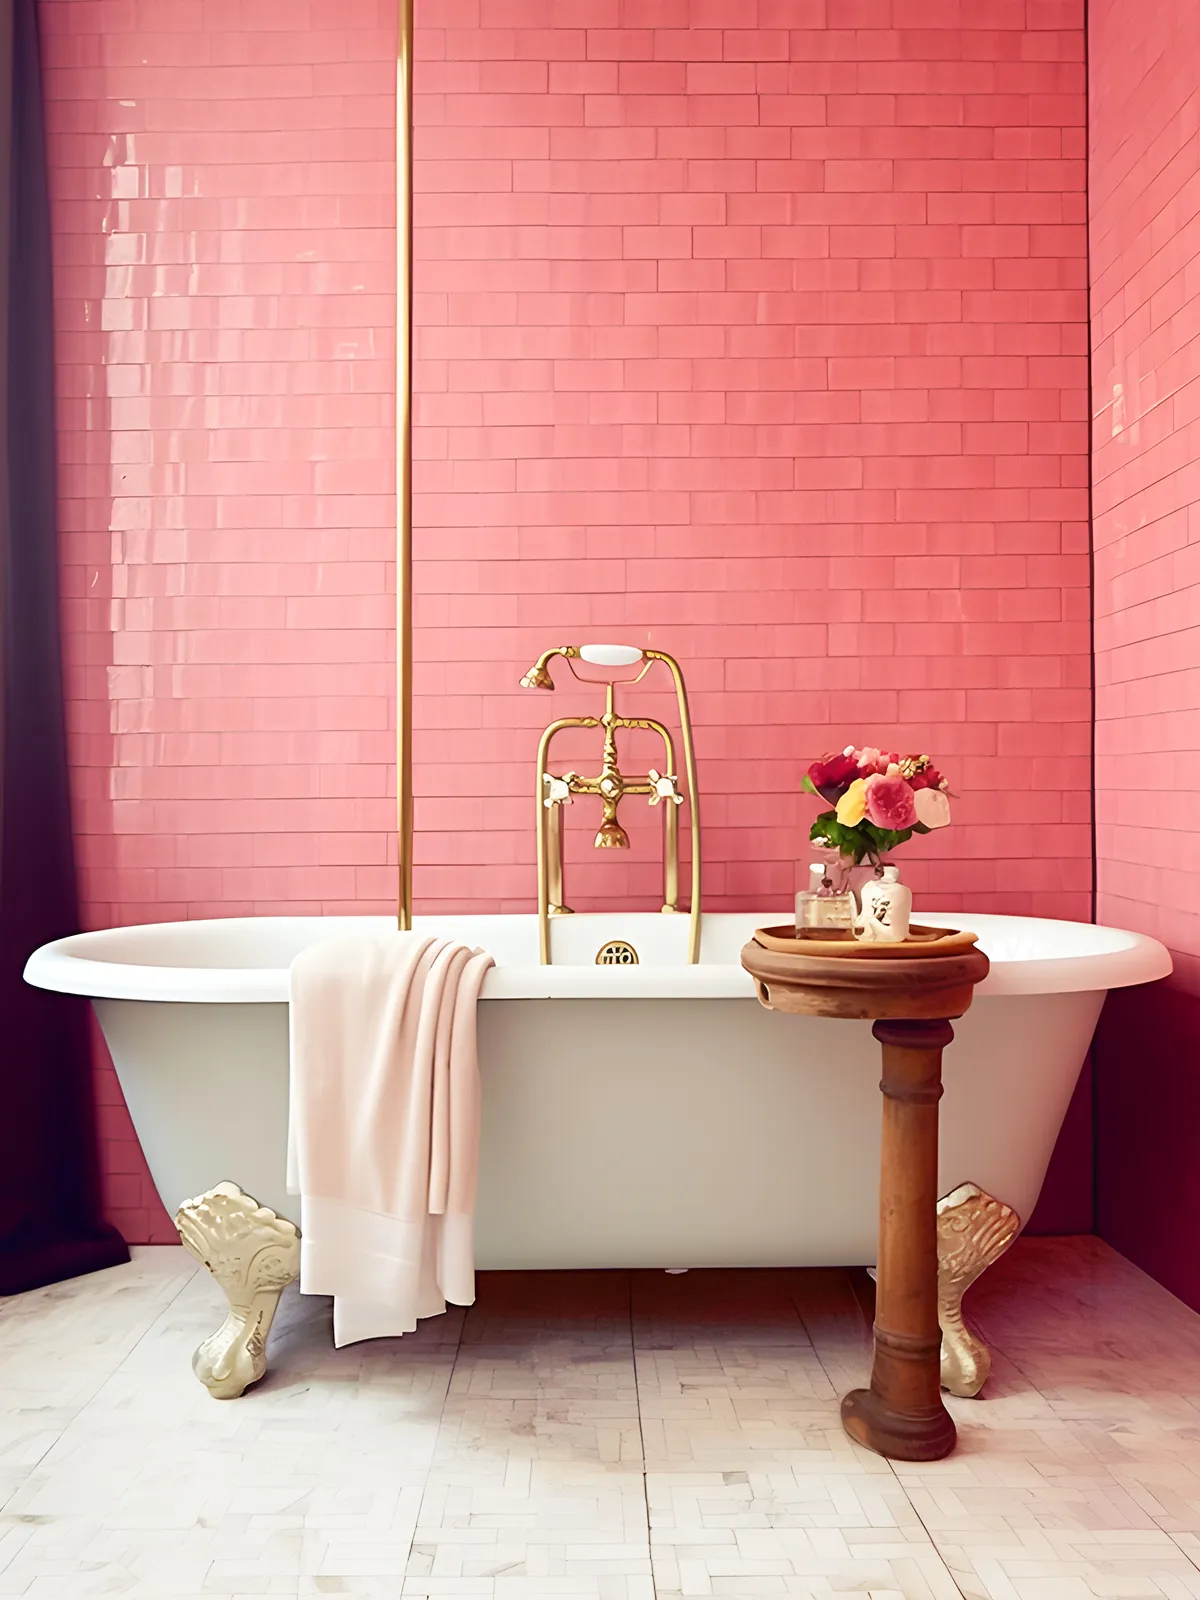 A bathroom with pink walls and a bathtub.